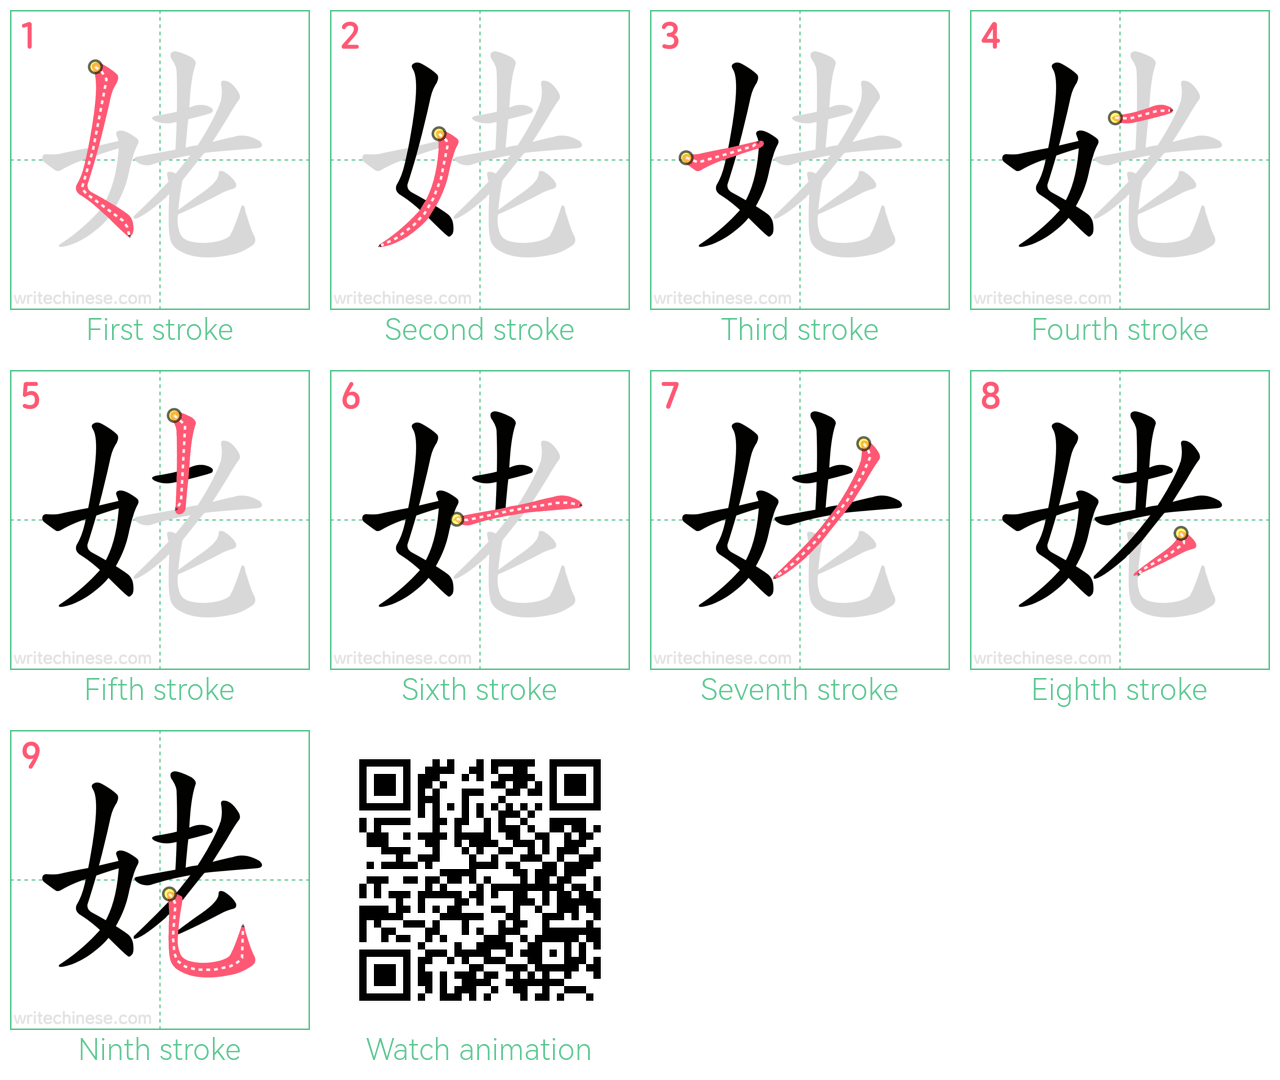 姥 step-by-step stroke order diagrams